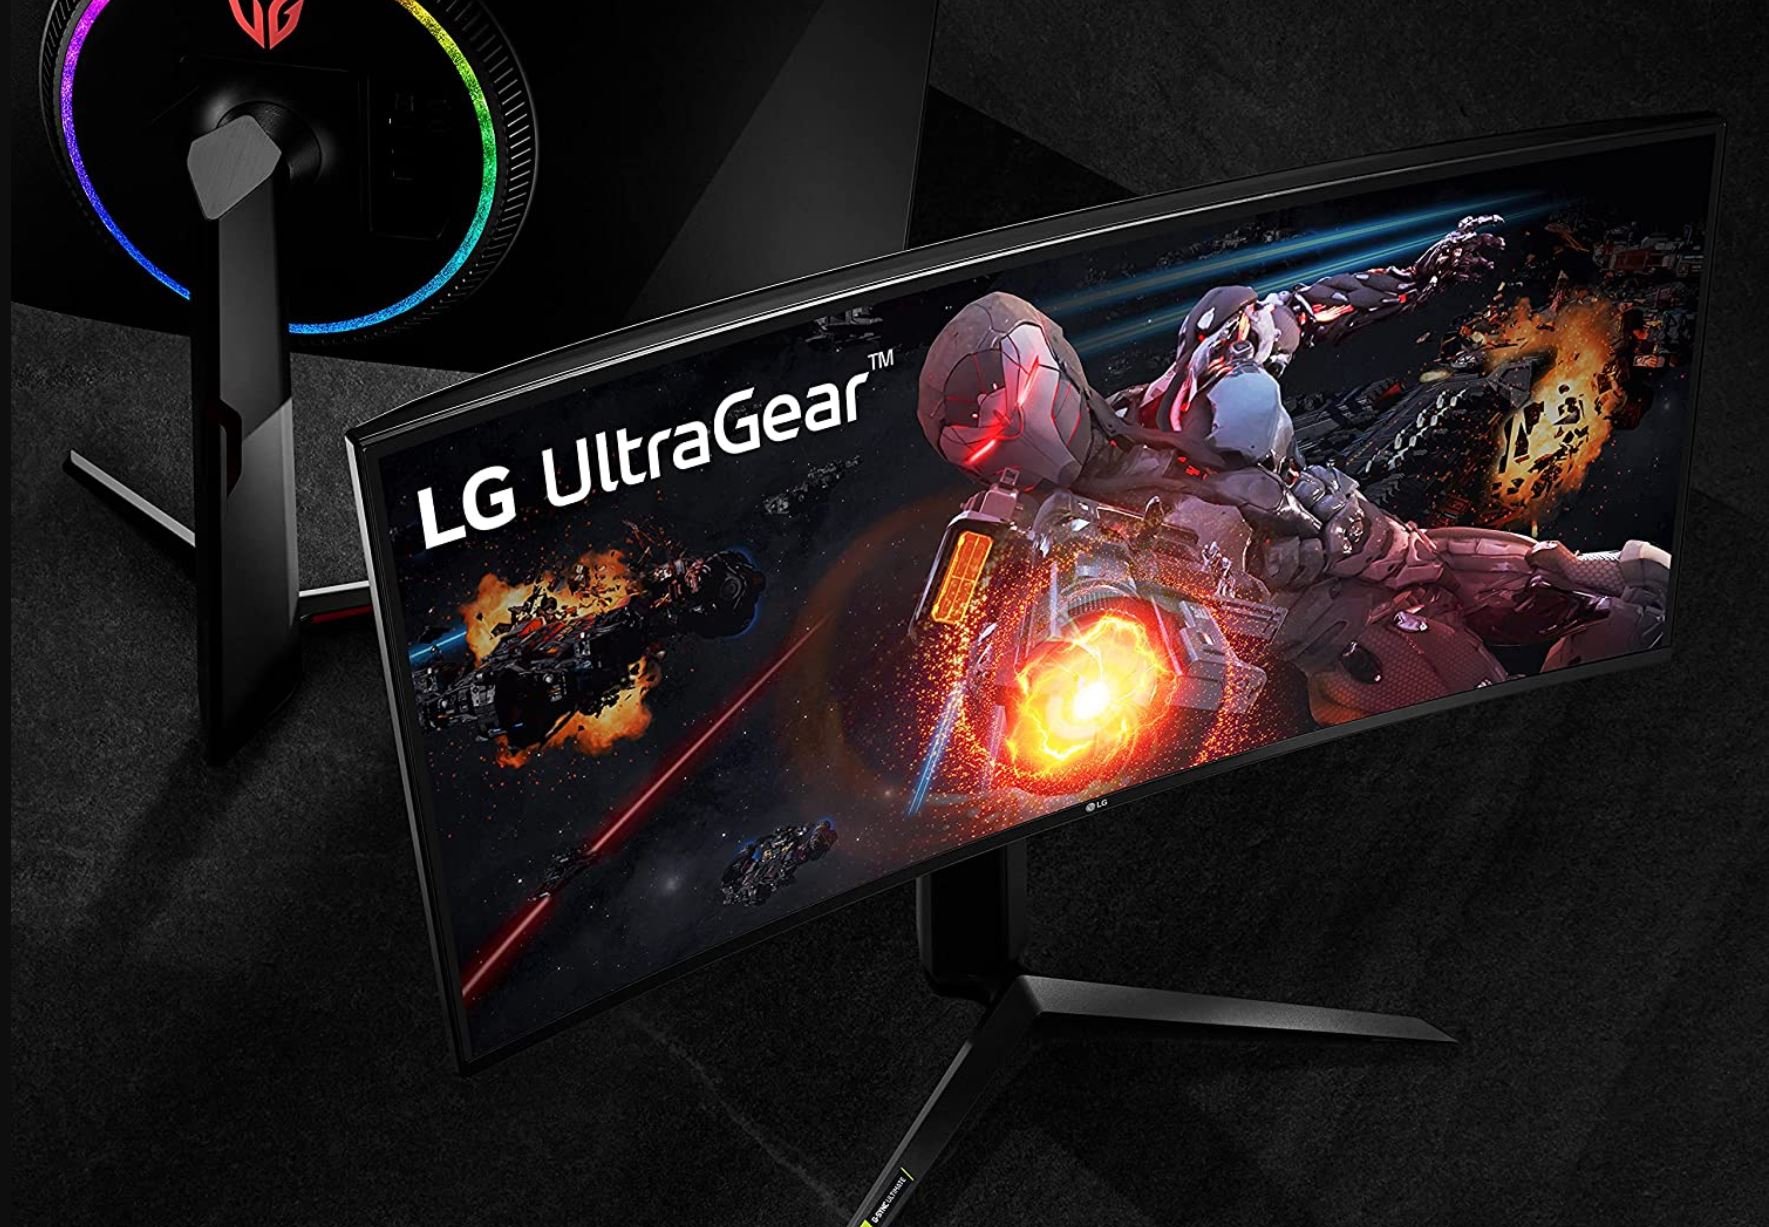 LG UltraGear 34GP950G : Le constructeur dévoile un moniteur gaming haut de gamme